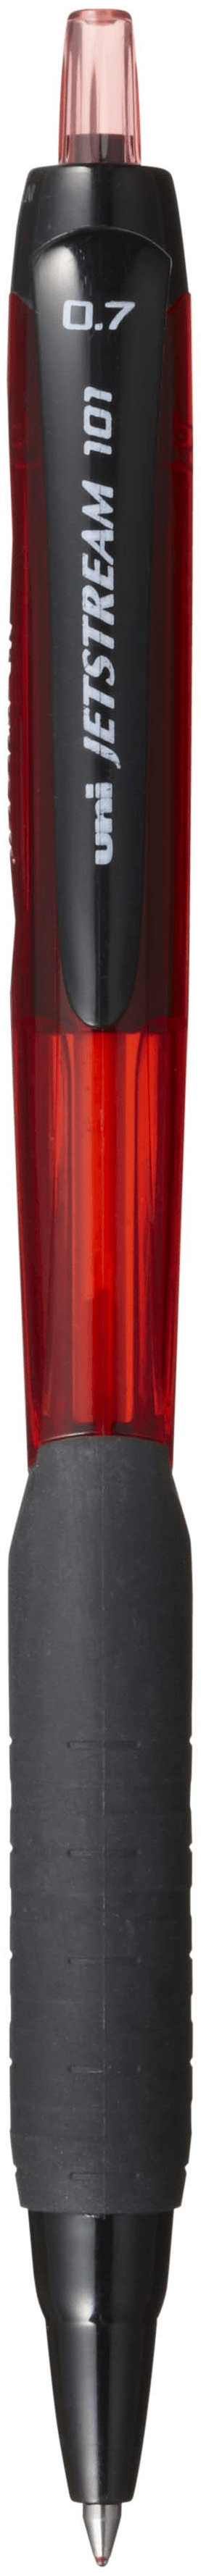 ยูนิ เจ็ทสตรีม SXN-101-07 ขนาด 0.7 สีแดง